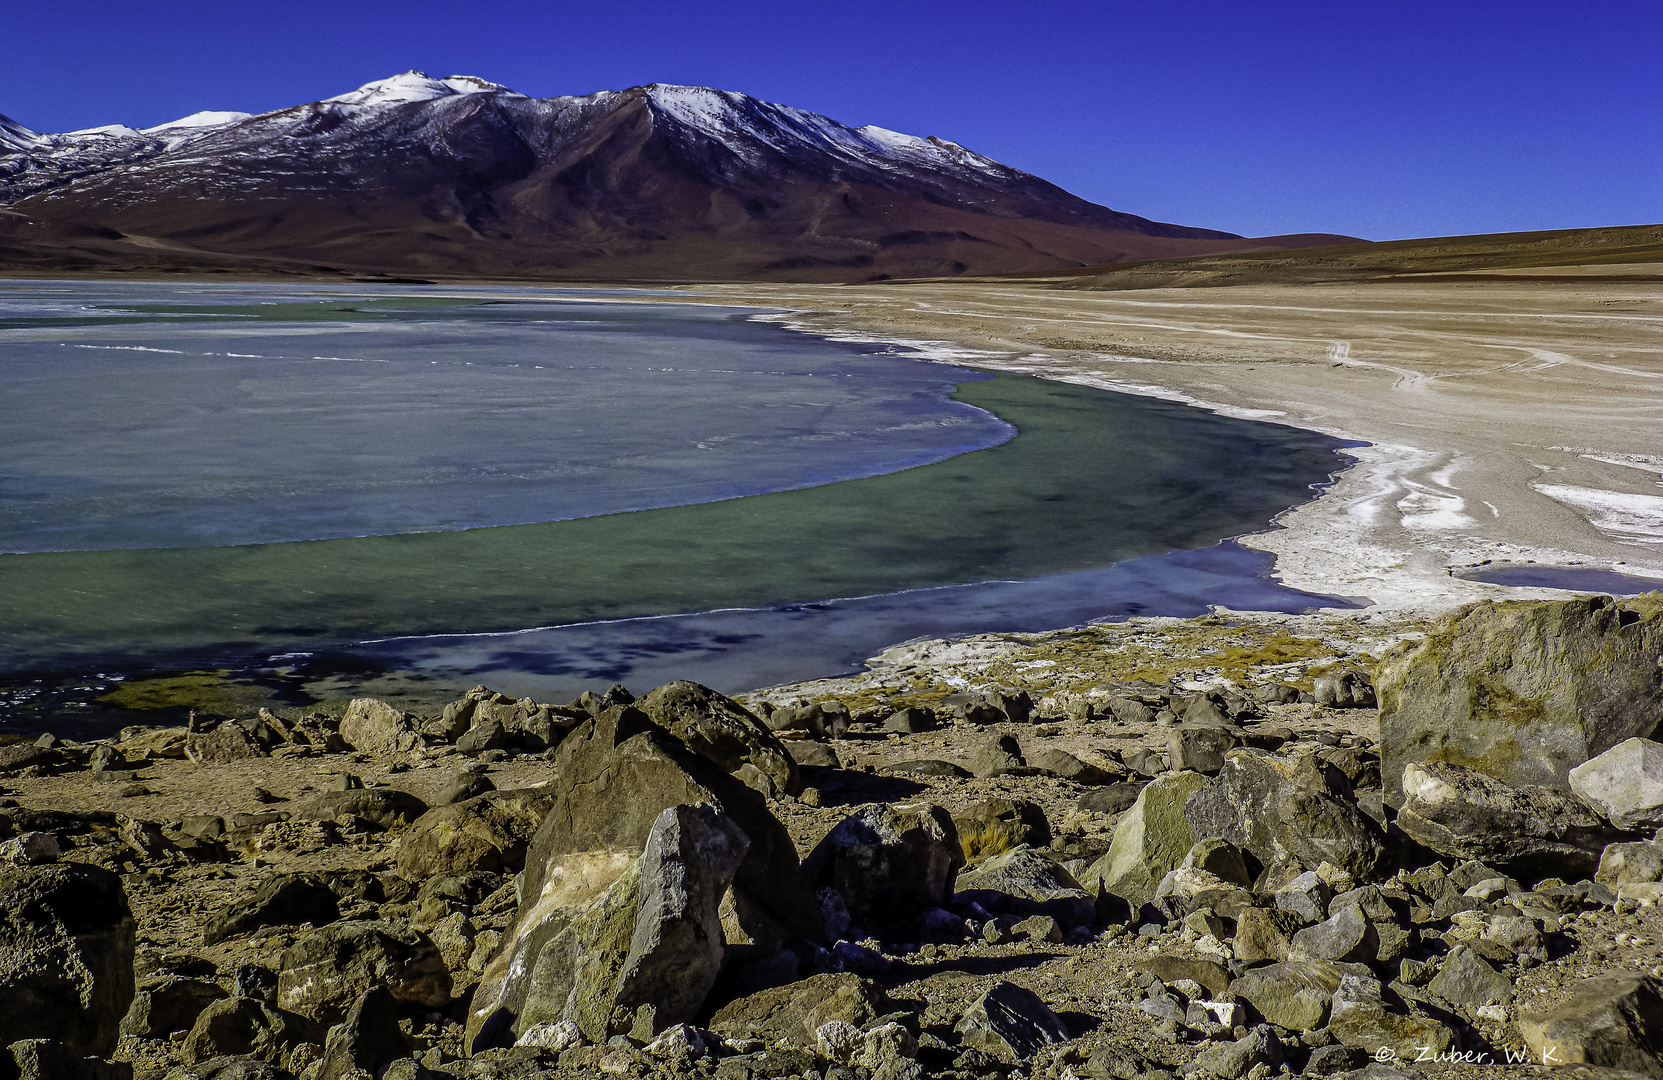 Altiplano: Farbenprächtig und eisig kalt , ...